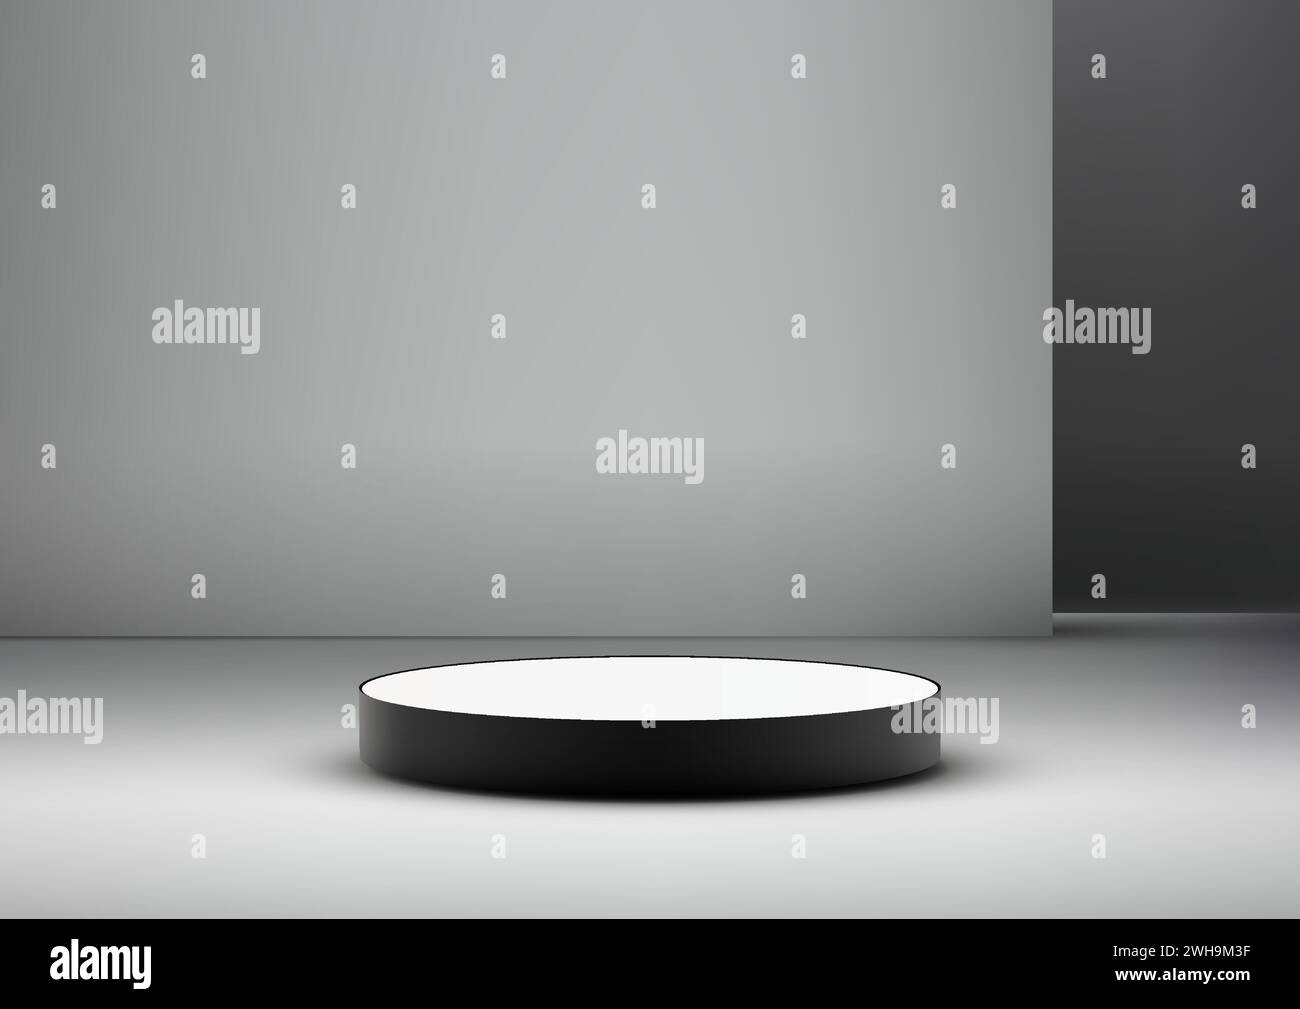 Maquette de podium noir et blanc 3D. Design minimaliste moderne, l'affichage de produit est parfait pour présenter des bijoux, des cosmétiques, de l'électronique. Illustration vectorielle Illustration de Vecteur